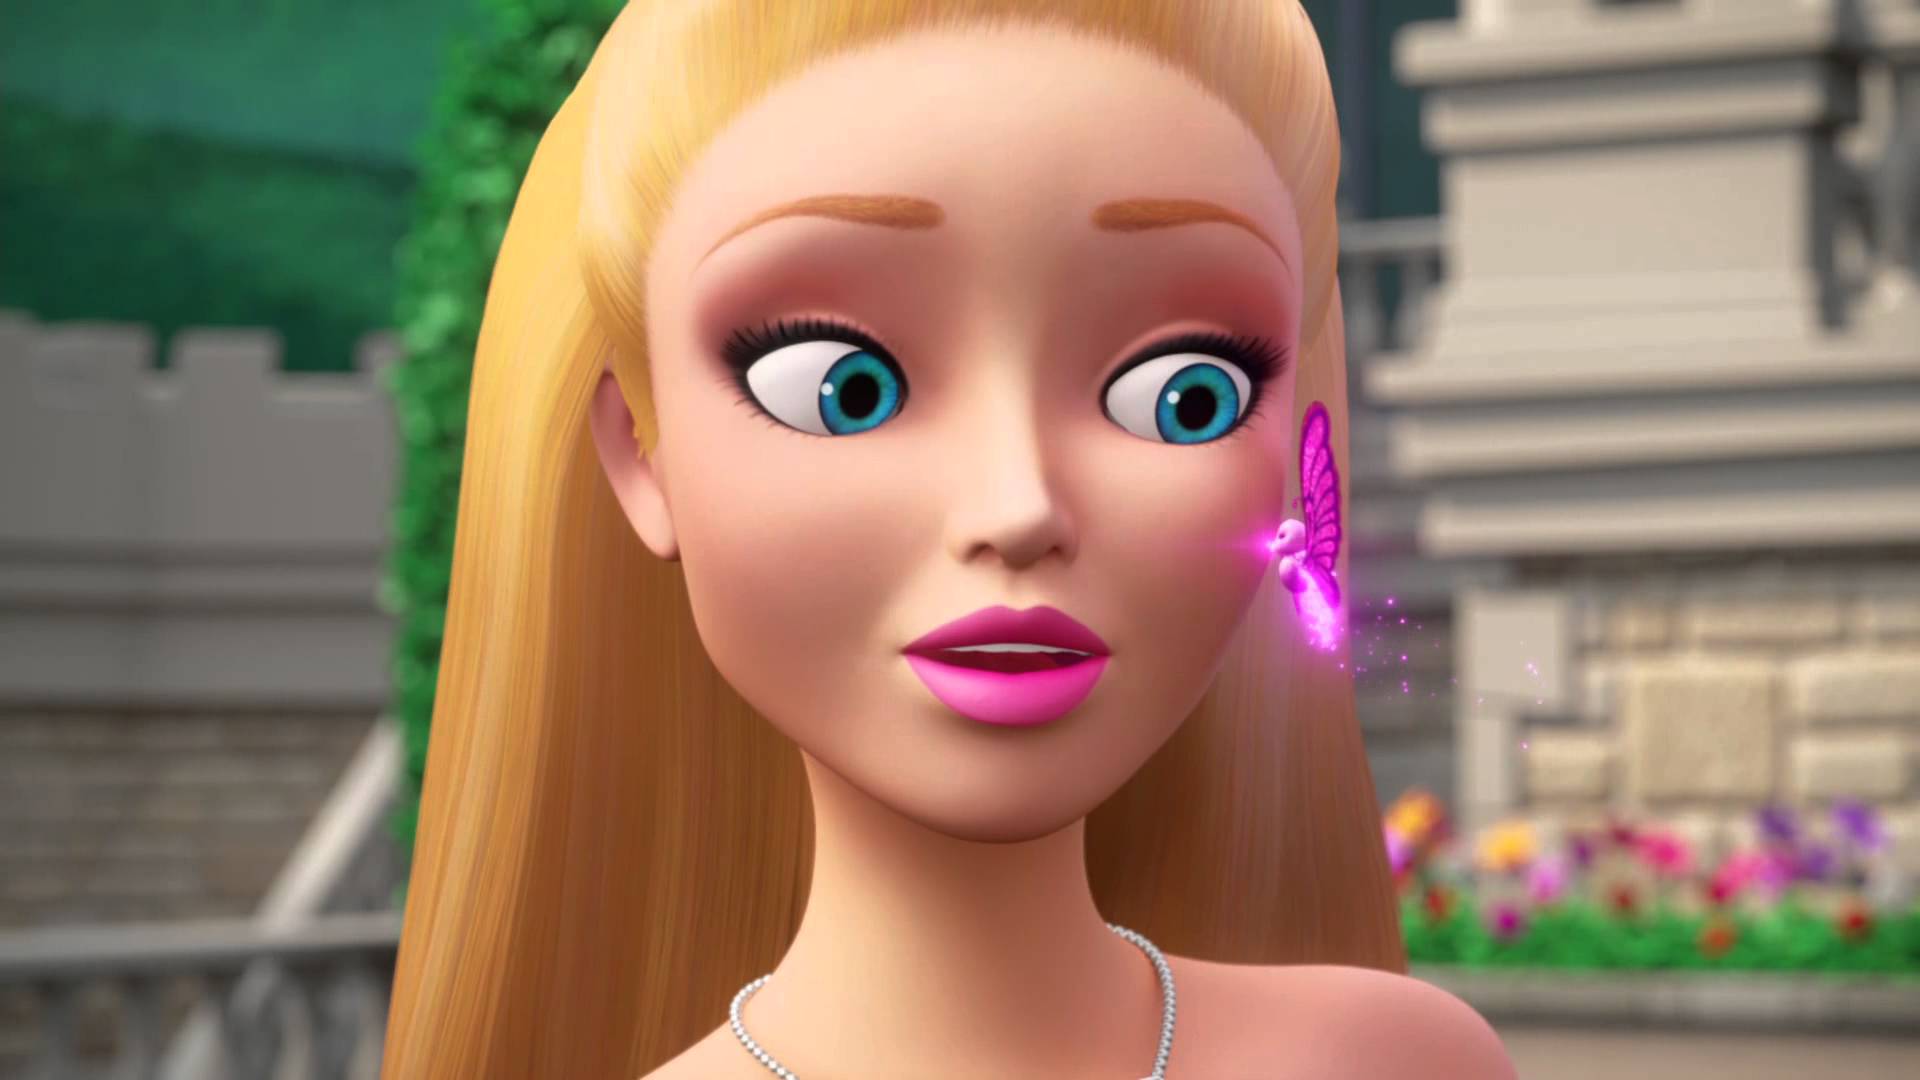 Скачать обои Barbie: Супер Принцесса на телефон бесплатно